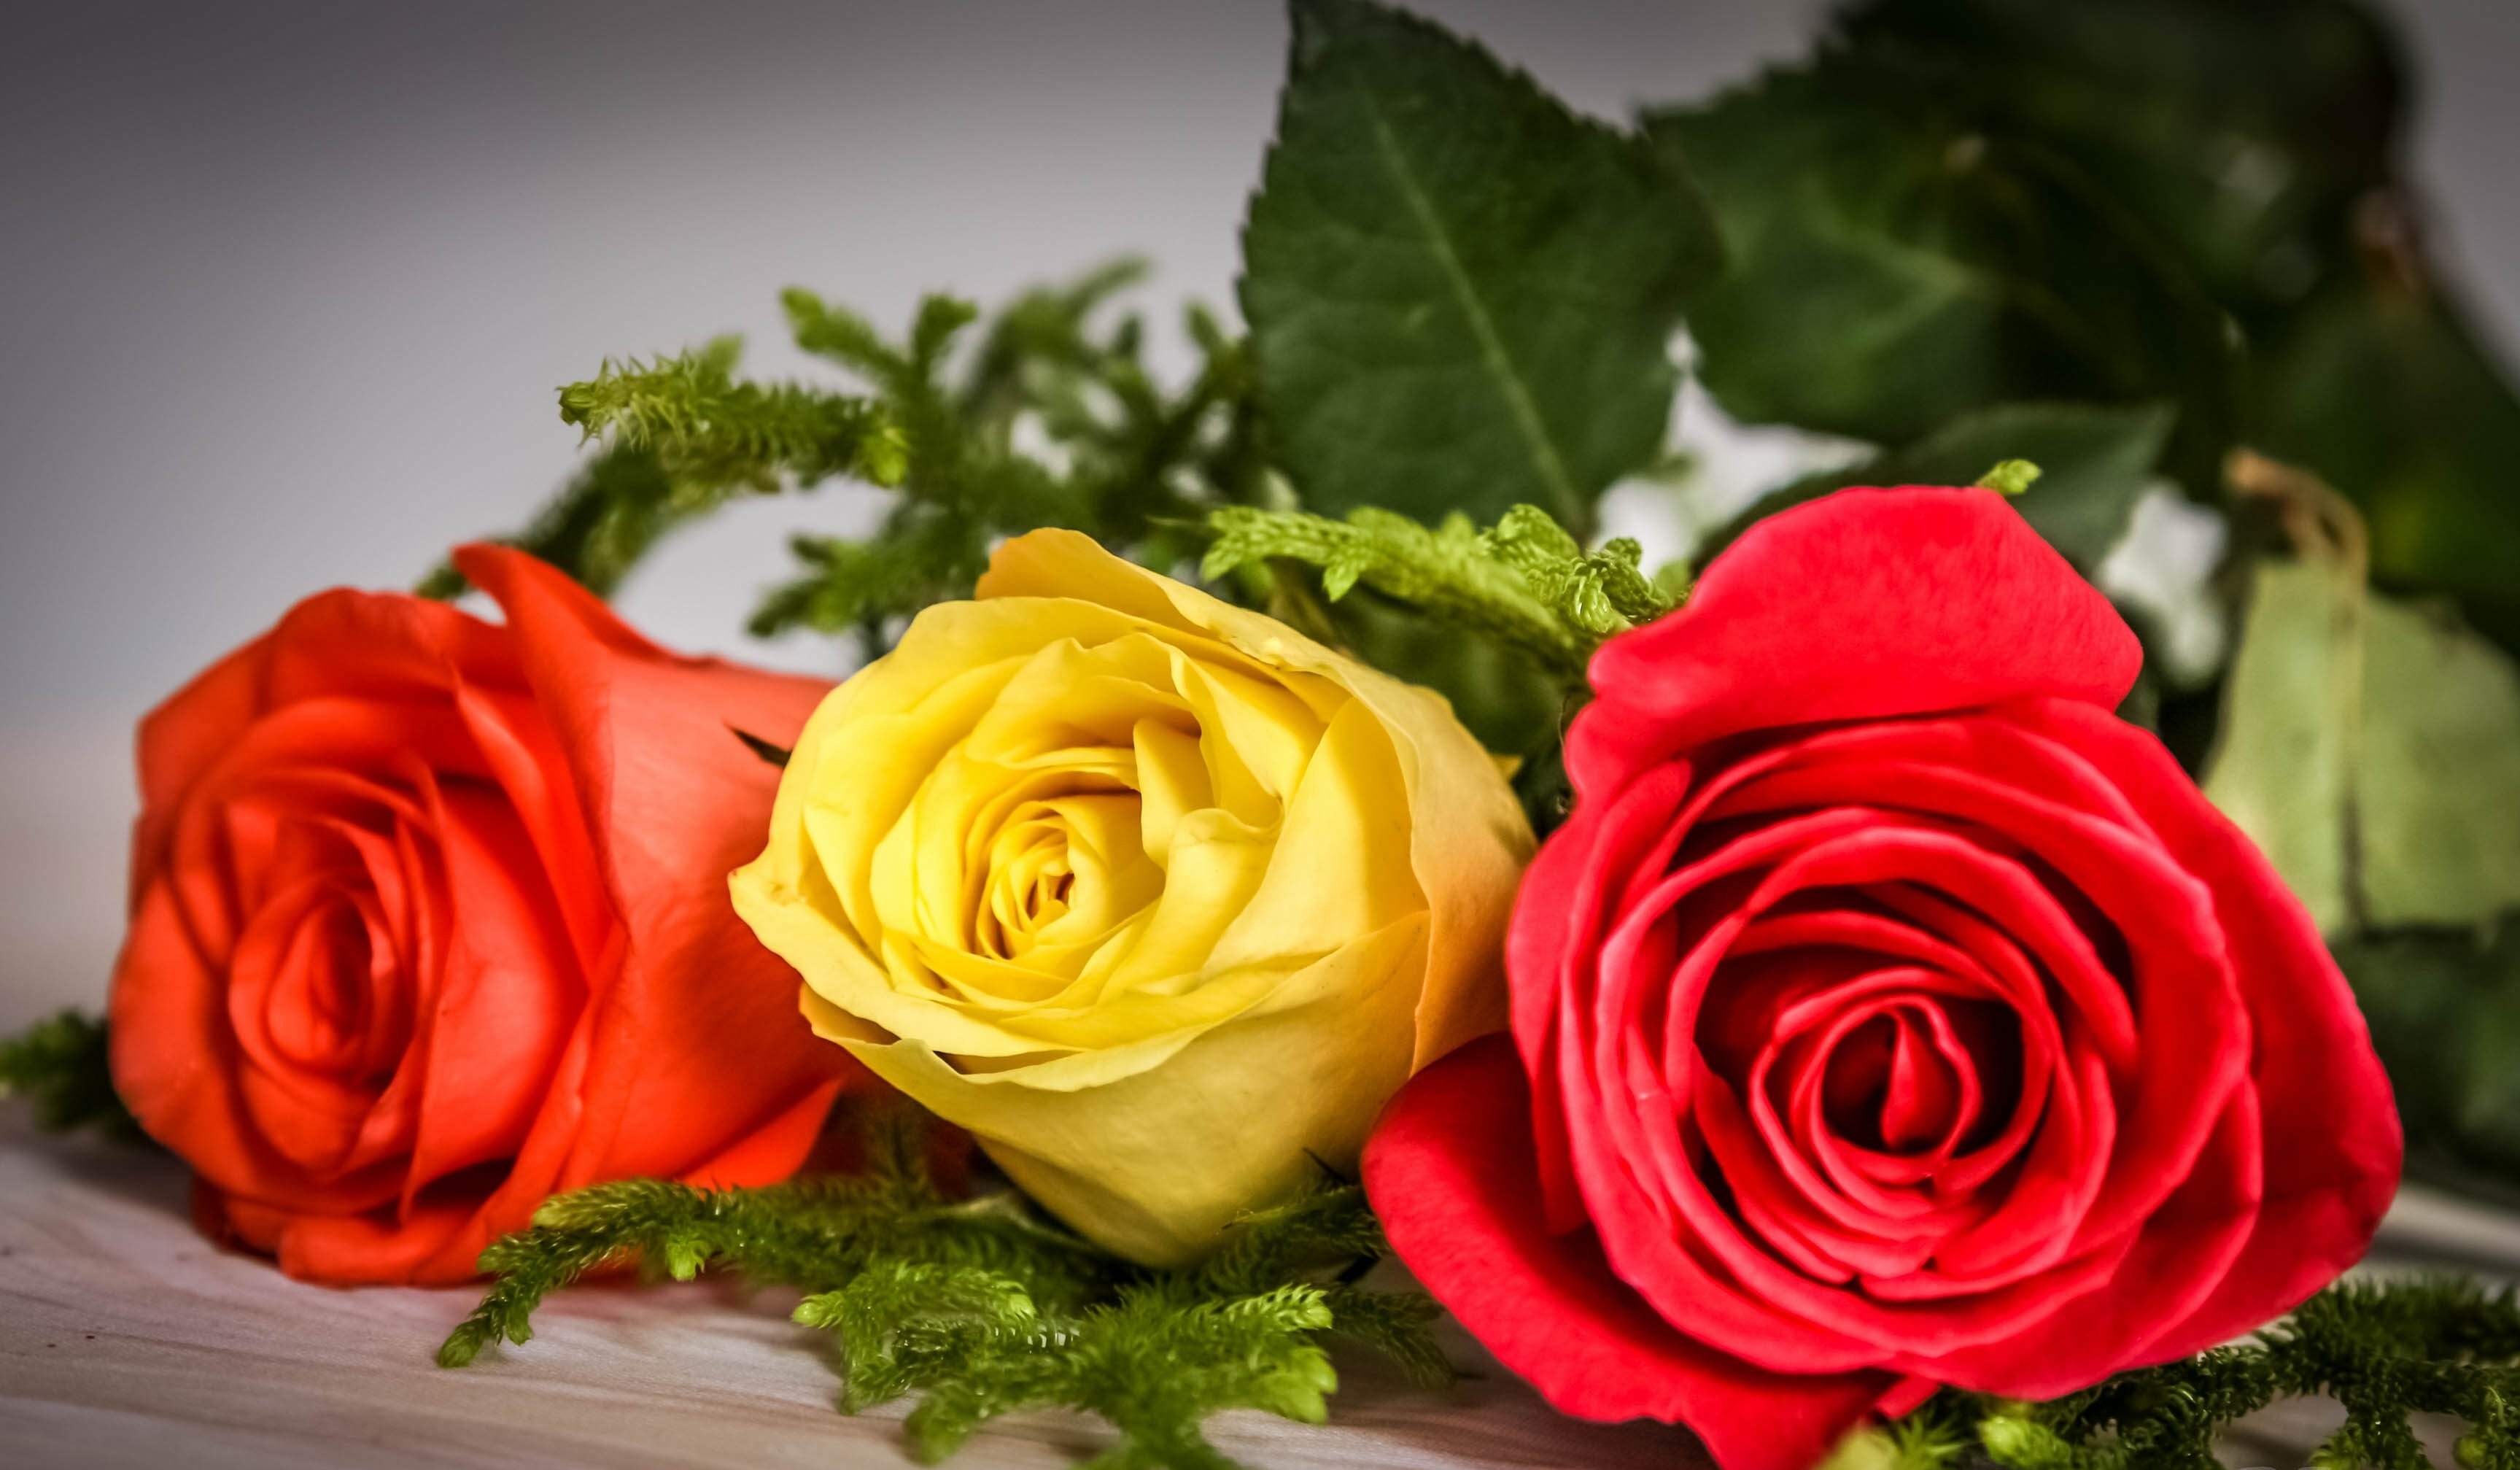 Скачать обои бесплатно Цветок, Роза, Желтый Цветок, Красный Цветок, Земля/природа, Оранжевый Цветок, Флауэрсы картинка на рабочий стол ПК